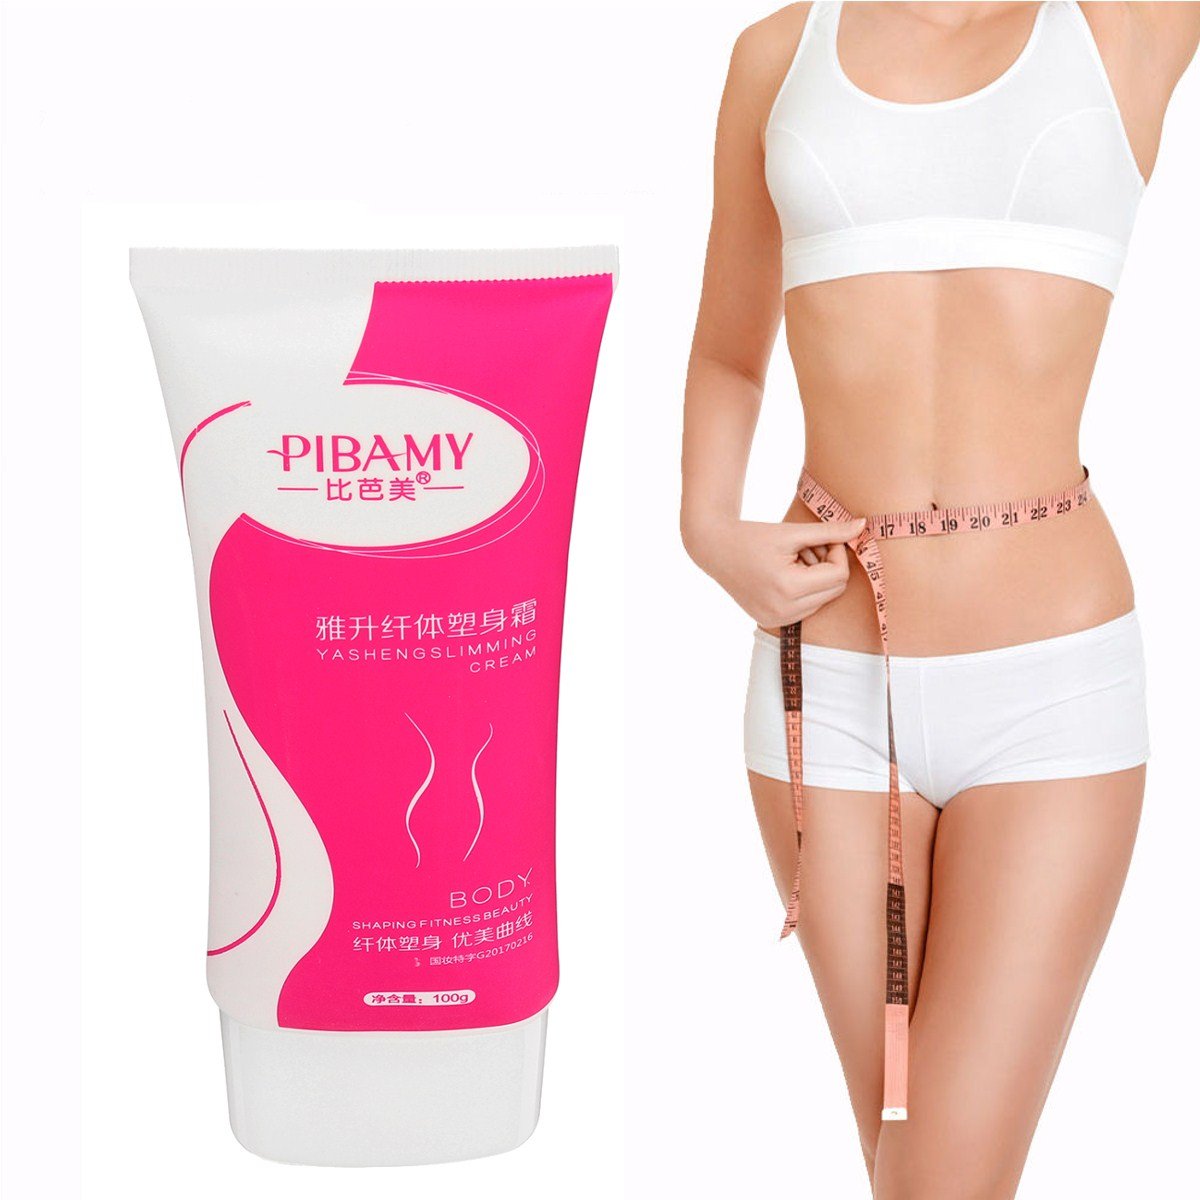 

Anti-Cellulite Body Slimming Cream